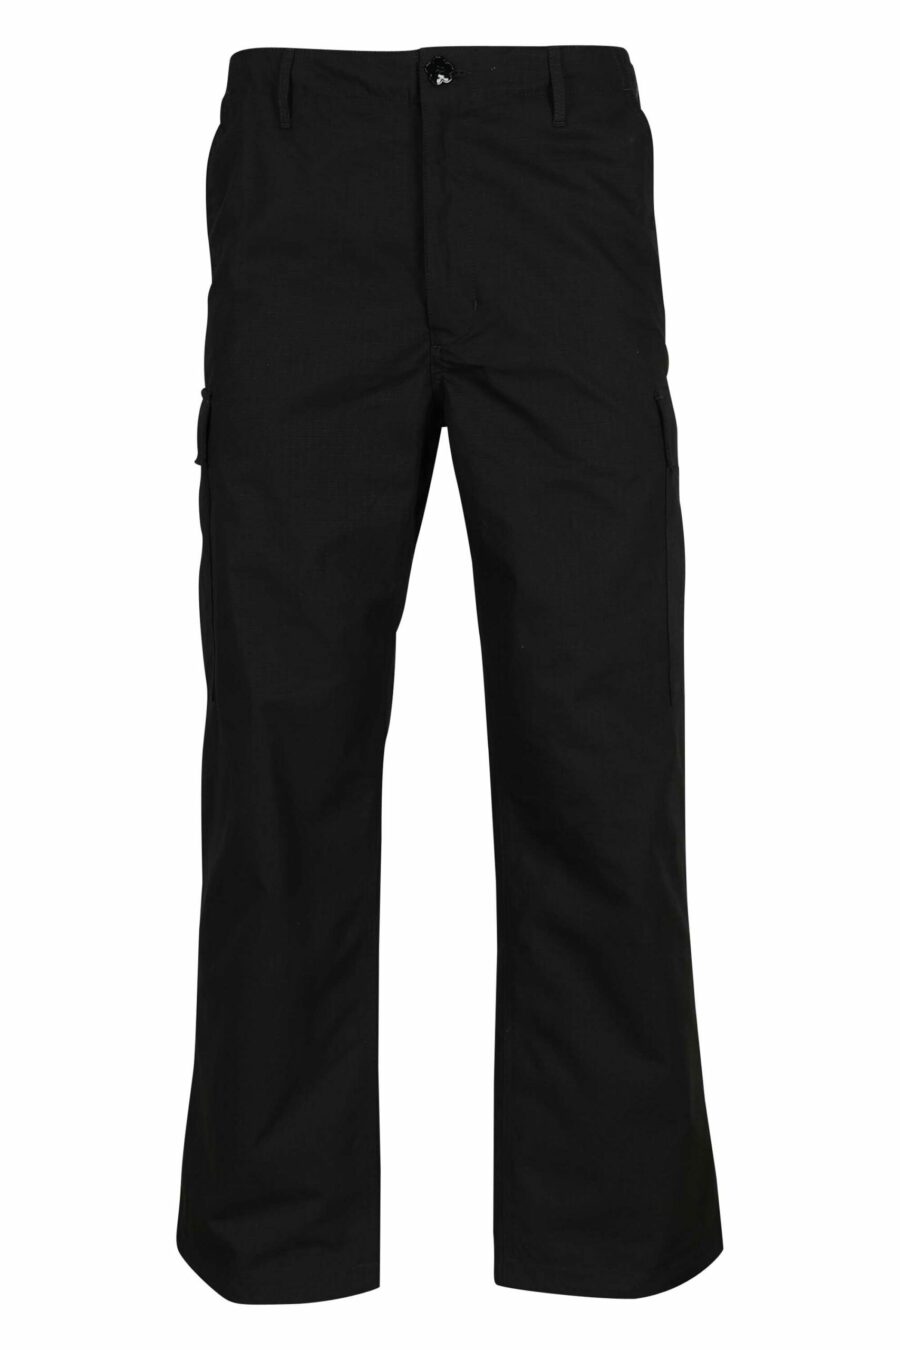 Pantalón negro estilo cargo con logo "boke flower" - 3612230618855 scaled